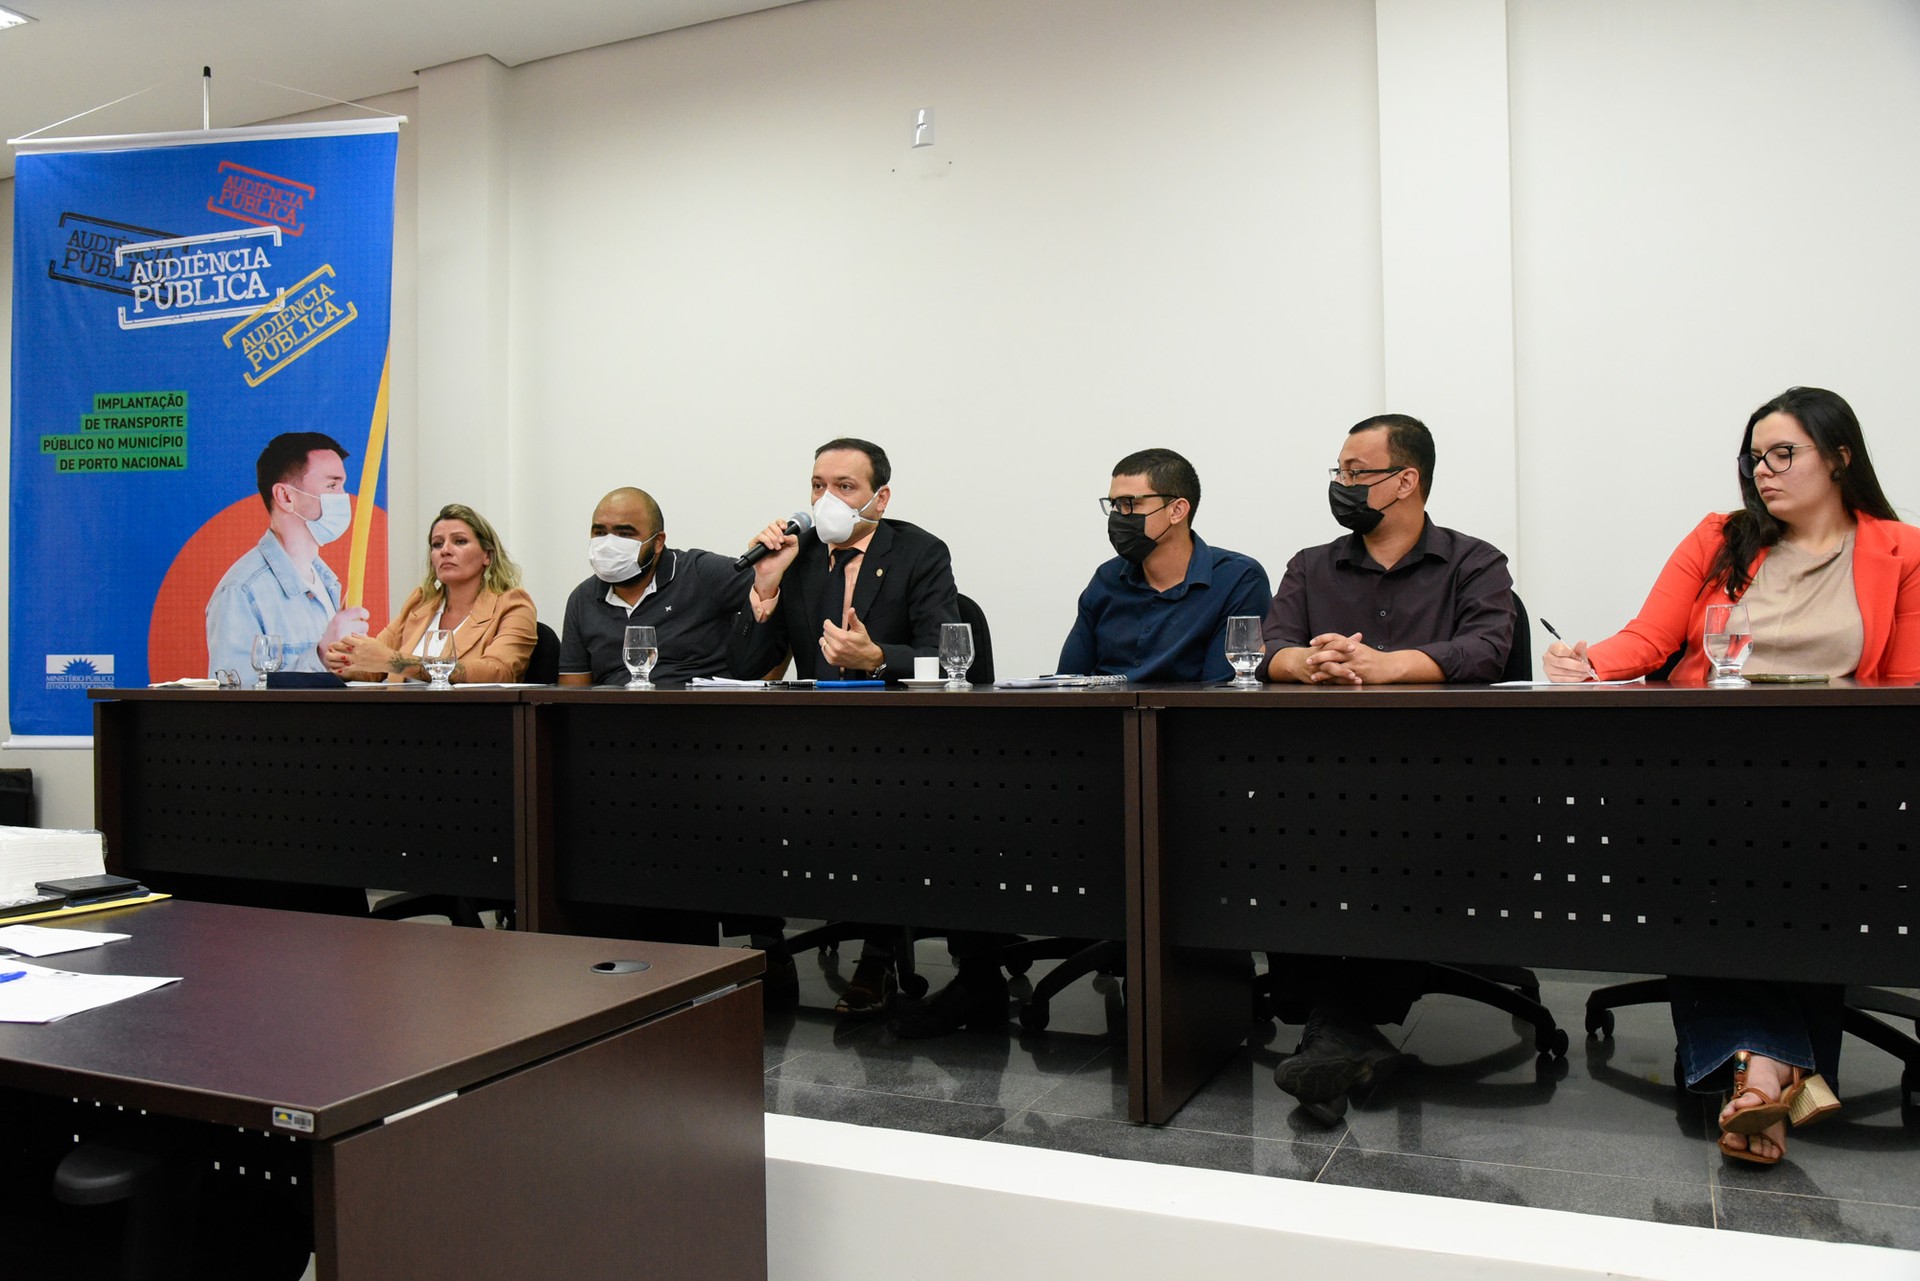 Representantes do MPTO, UFT, IFTO, ATR e Prefeitura de Porto Nacional ouviram e responderam os questionamentos dos presentes